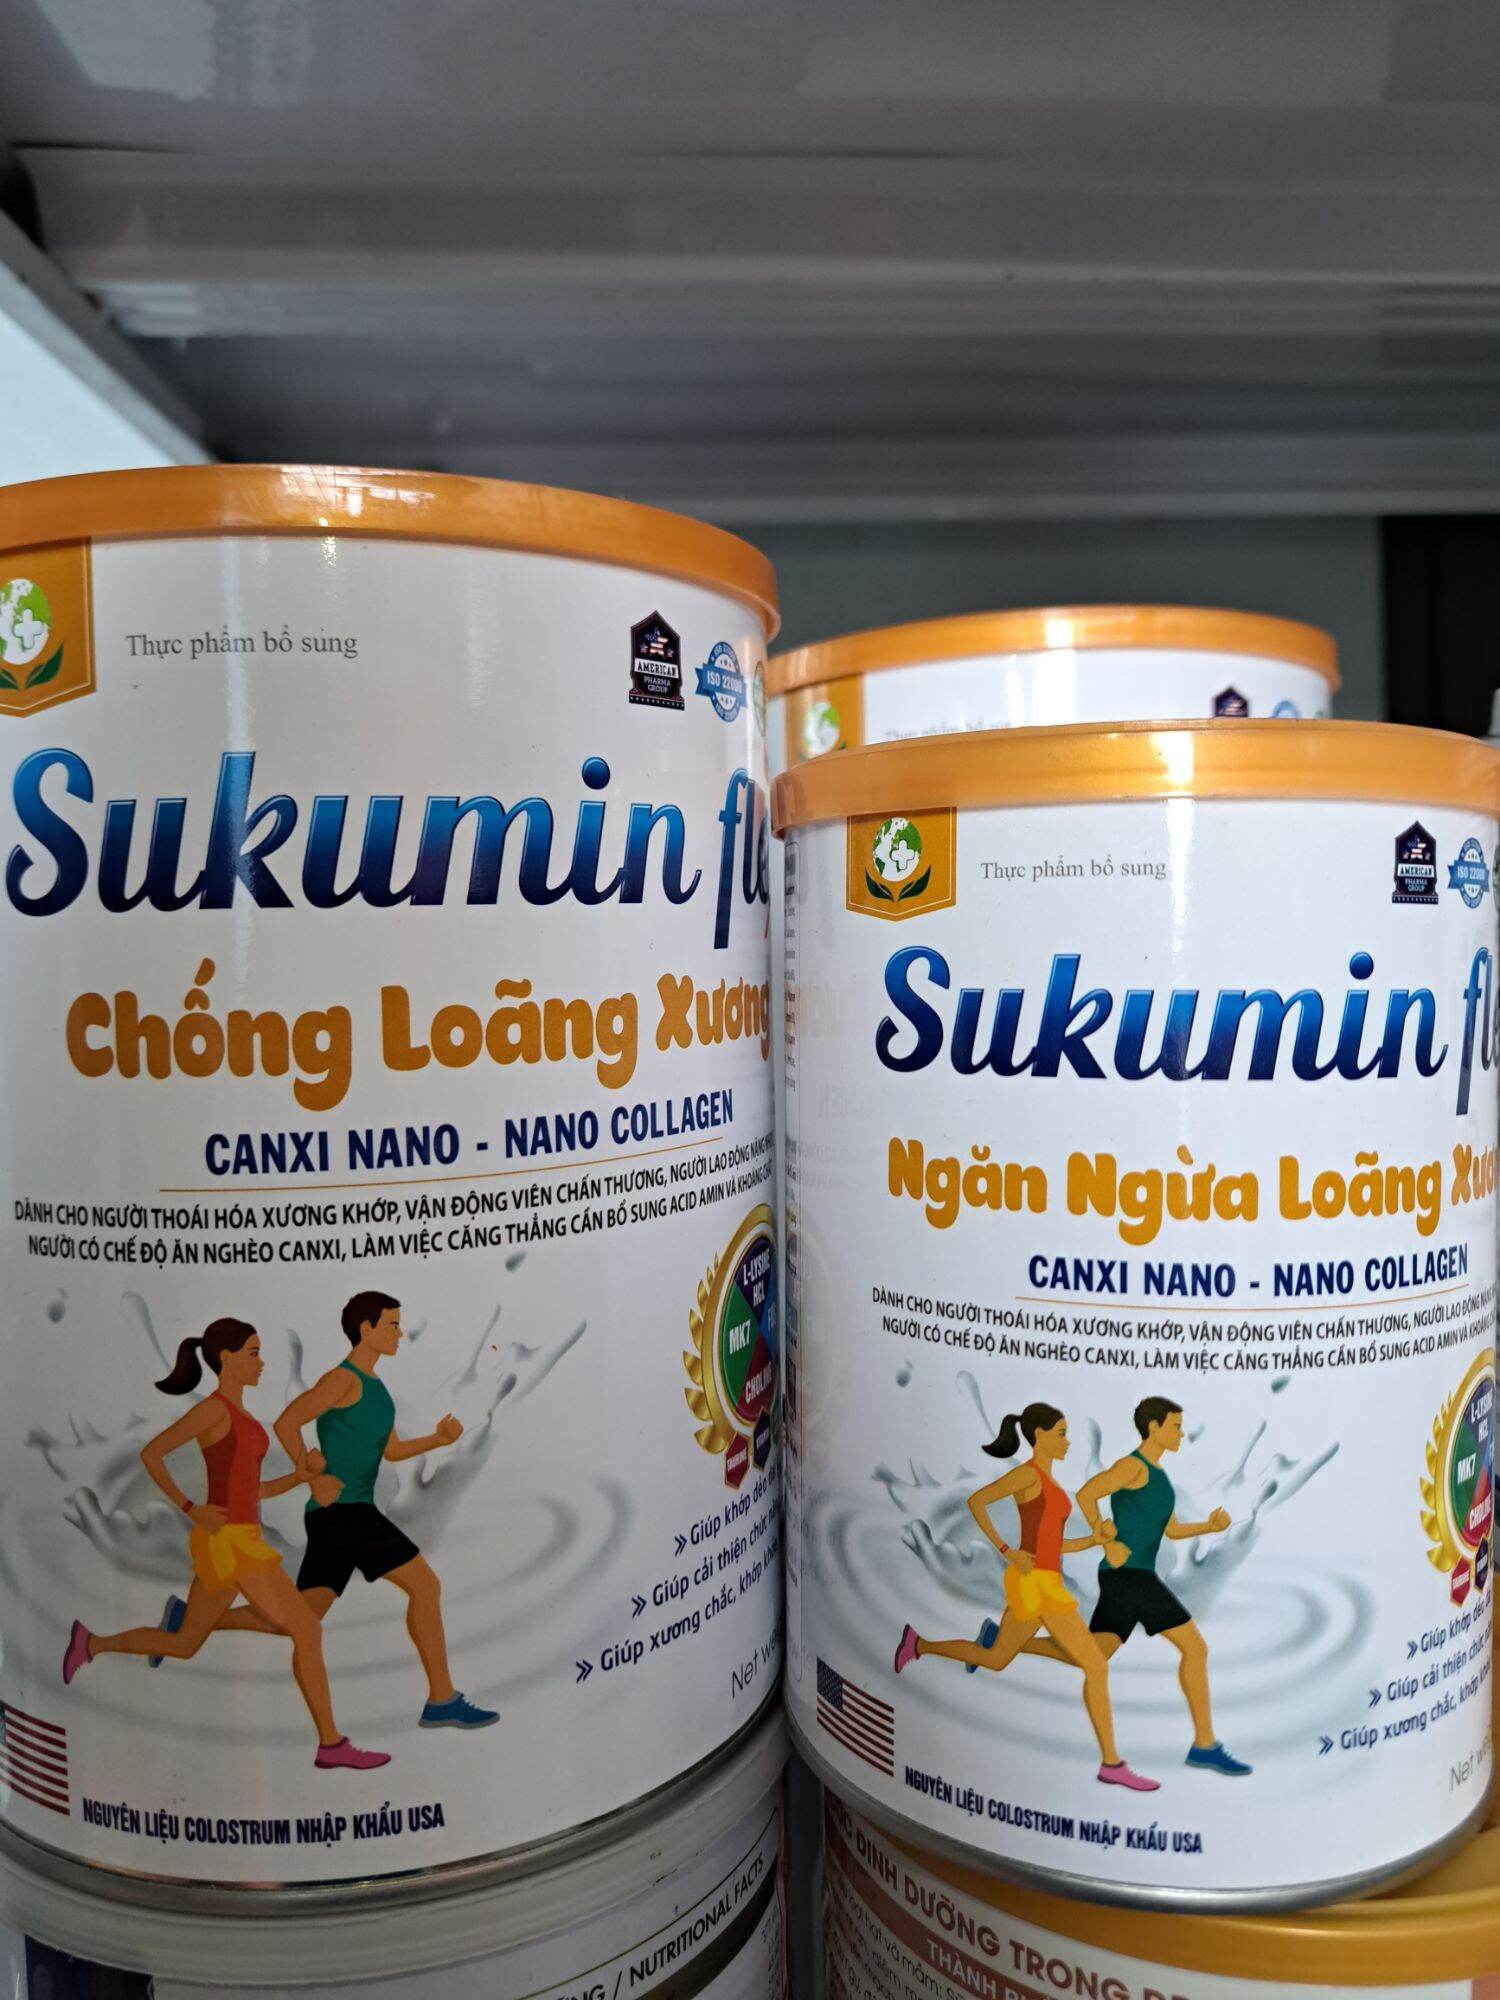 Sữa Sukumin Flex Chống Loãng Xương - Dành cho người thoái hóa xương khớp